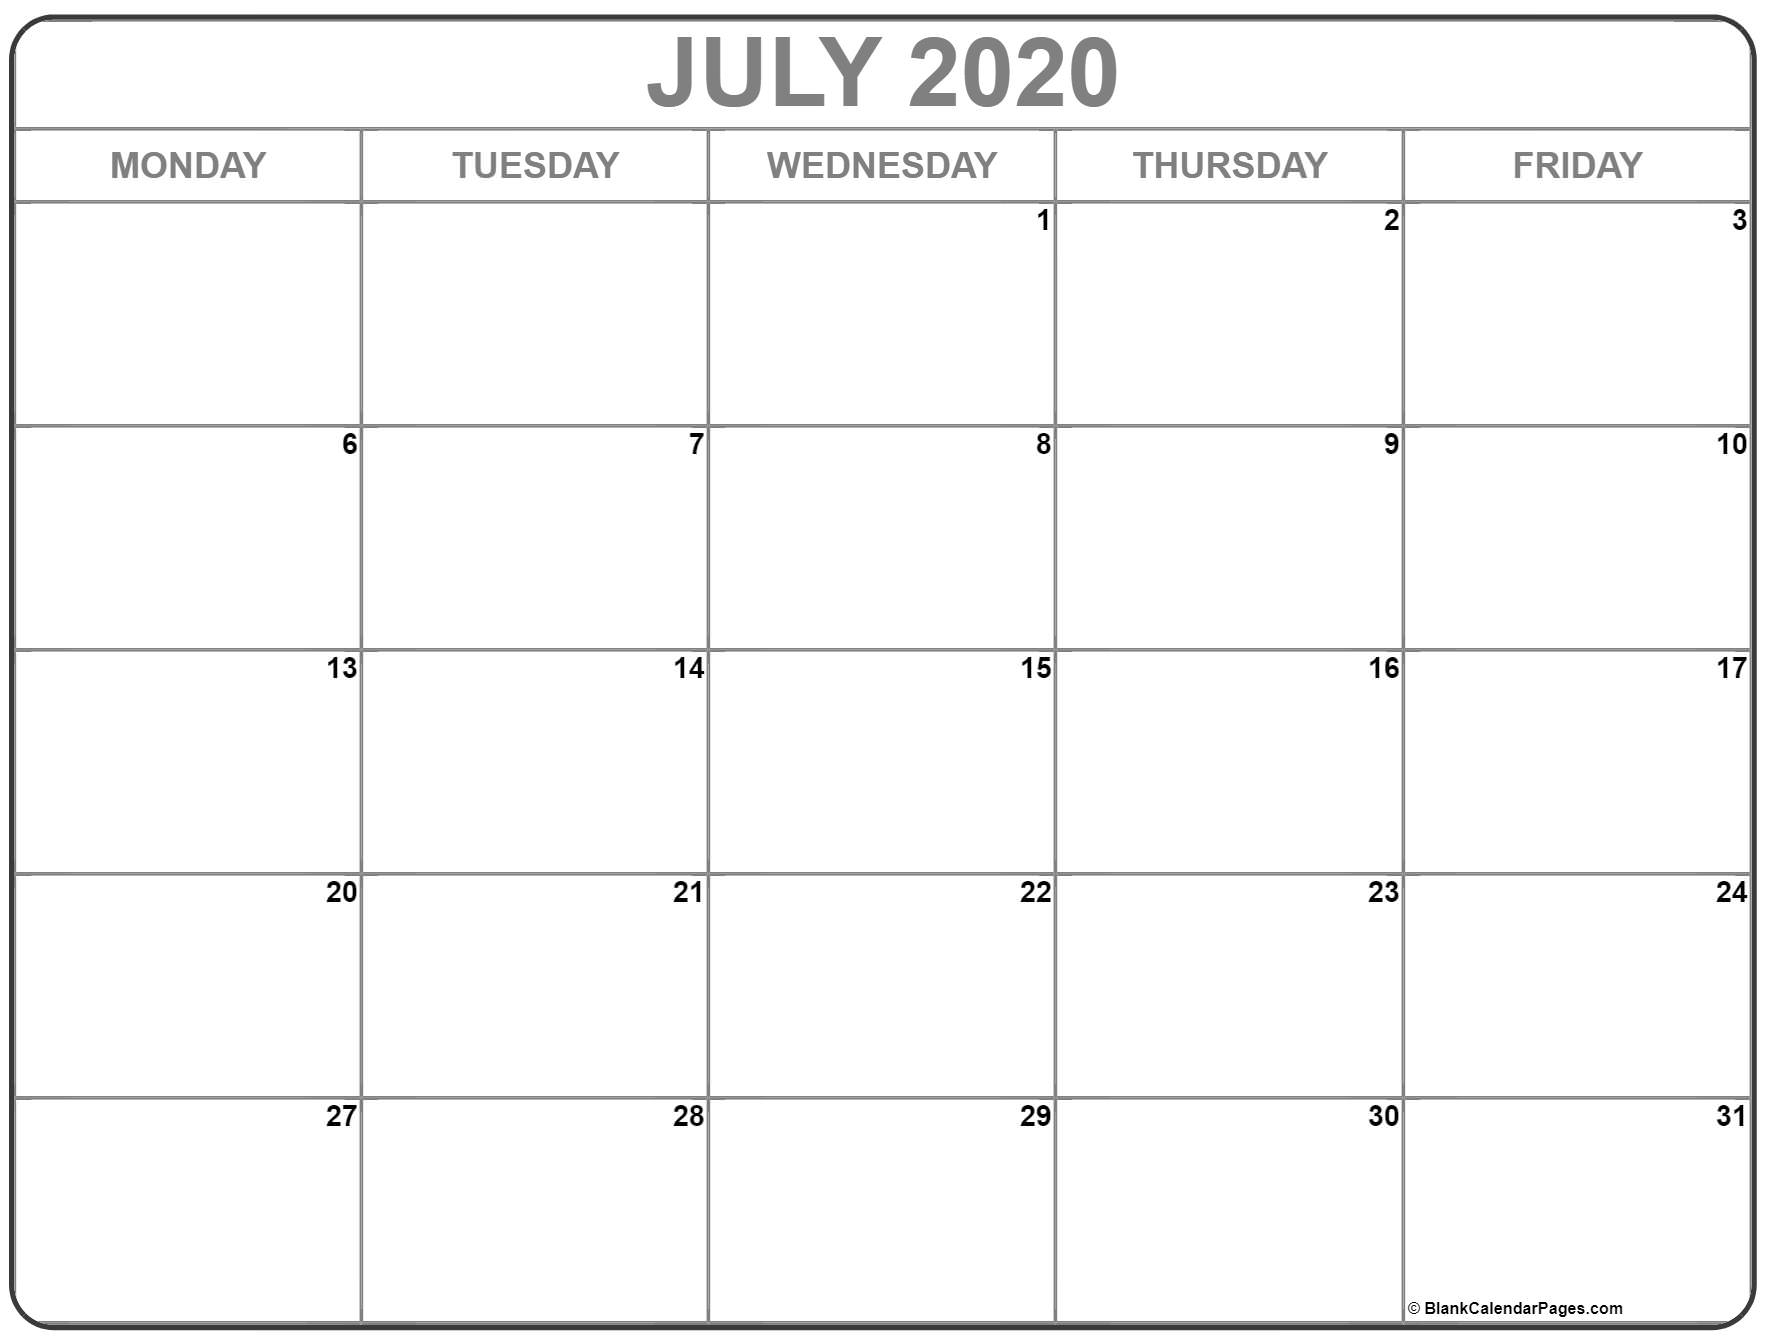 July 2020 Monday Calendar | Monday To Sunday